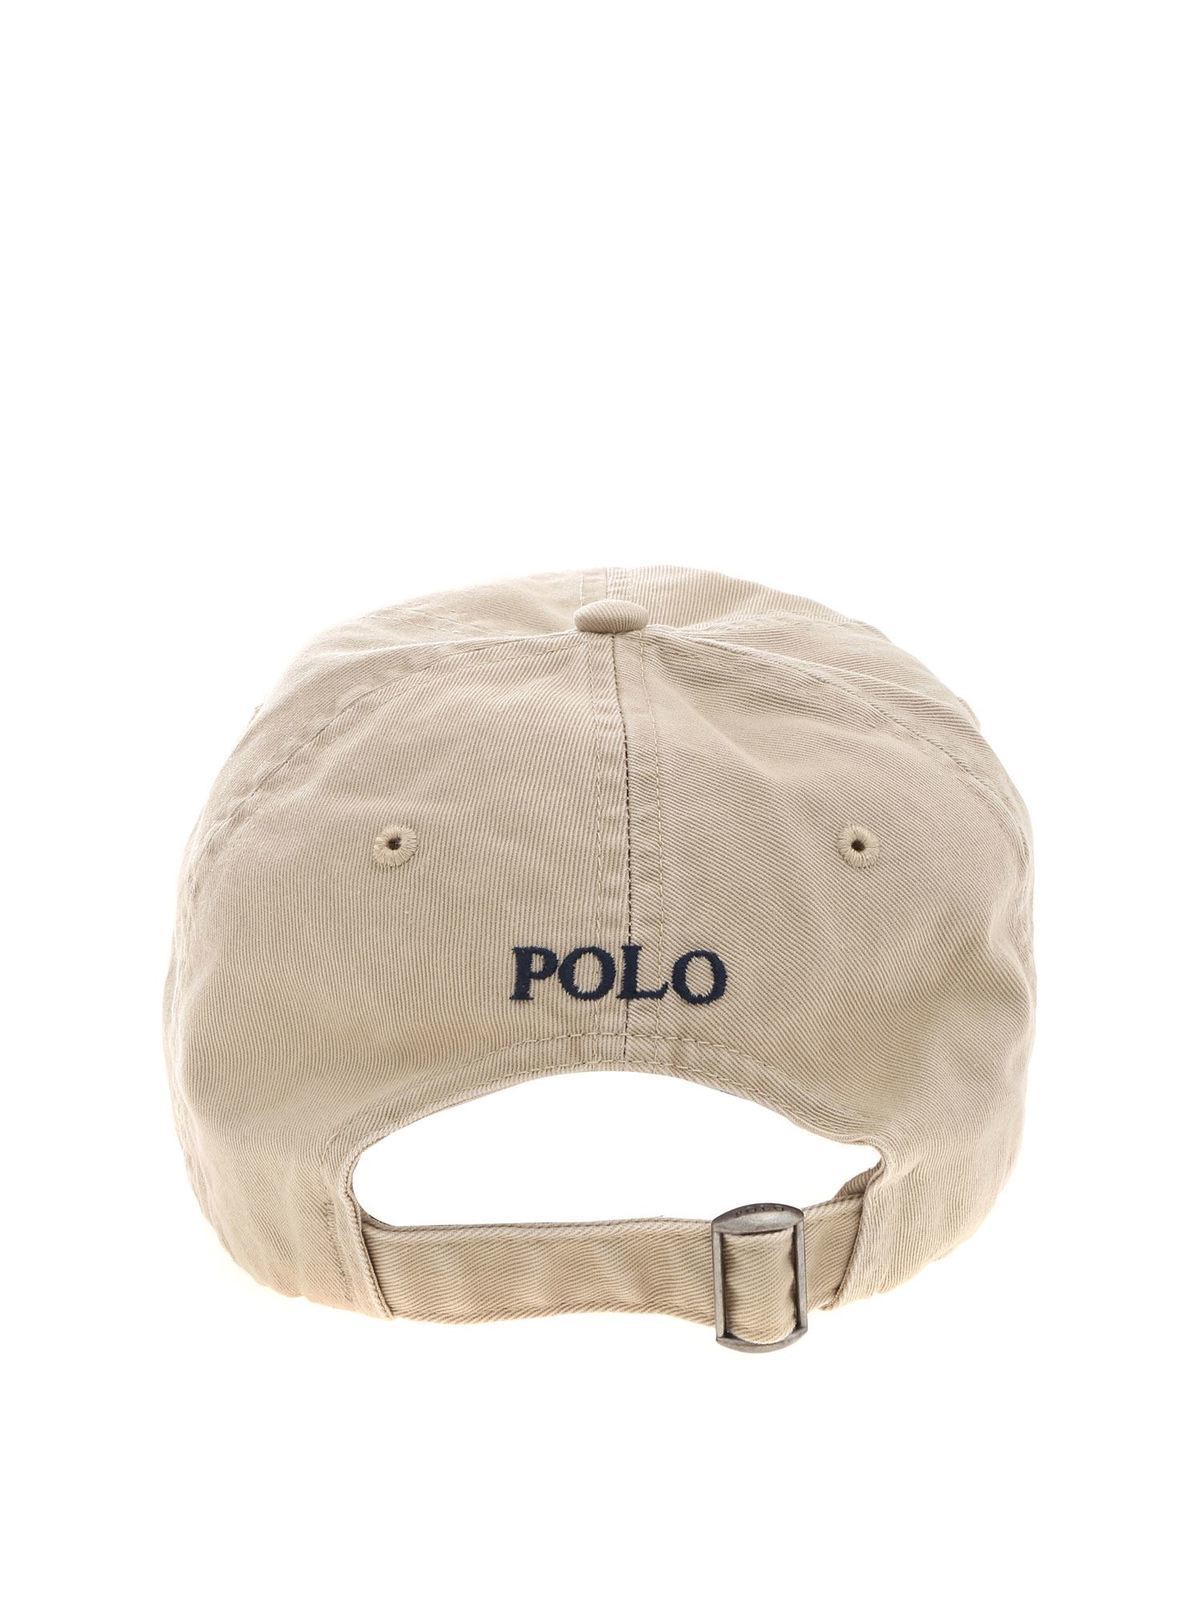 beige polo hat